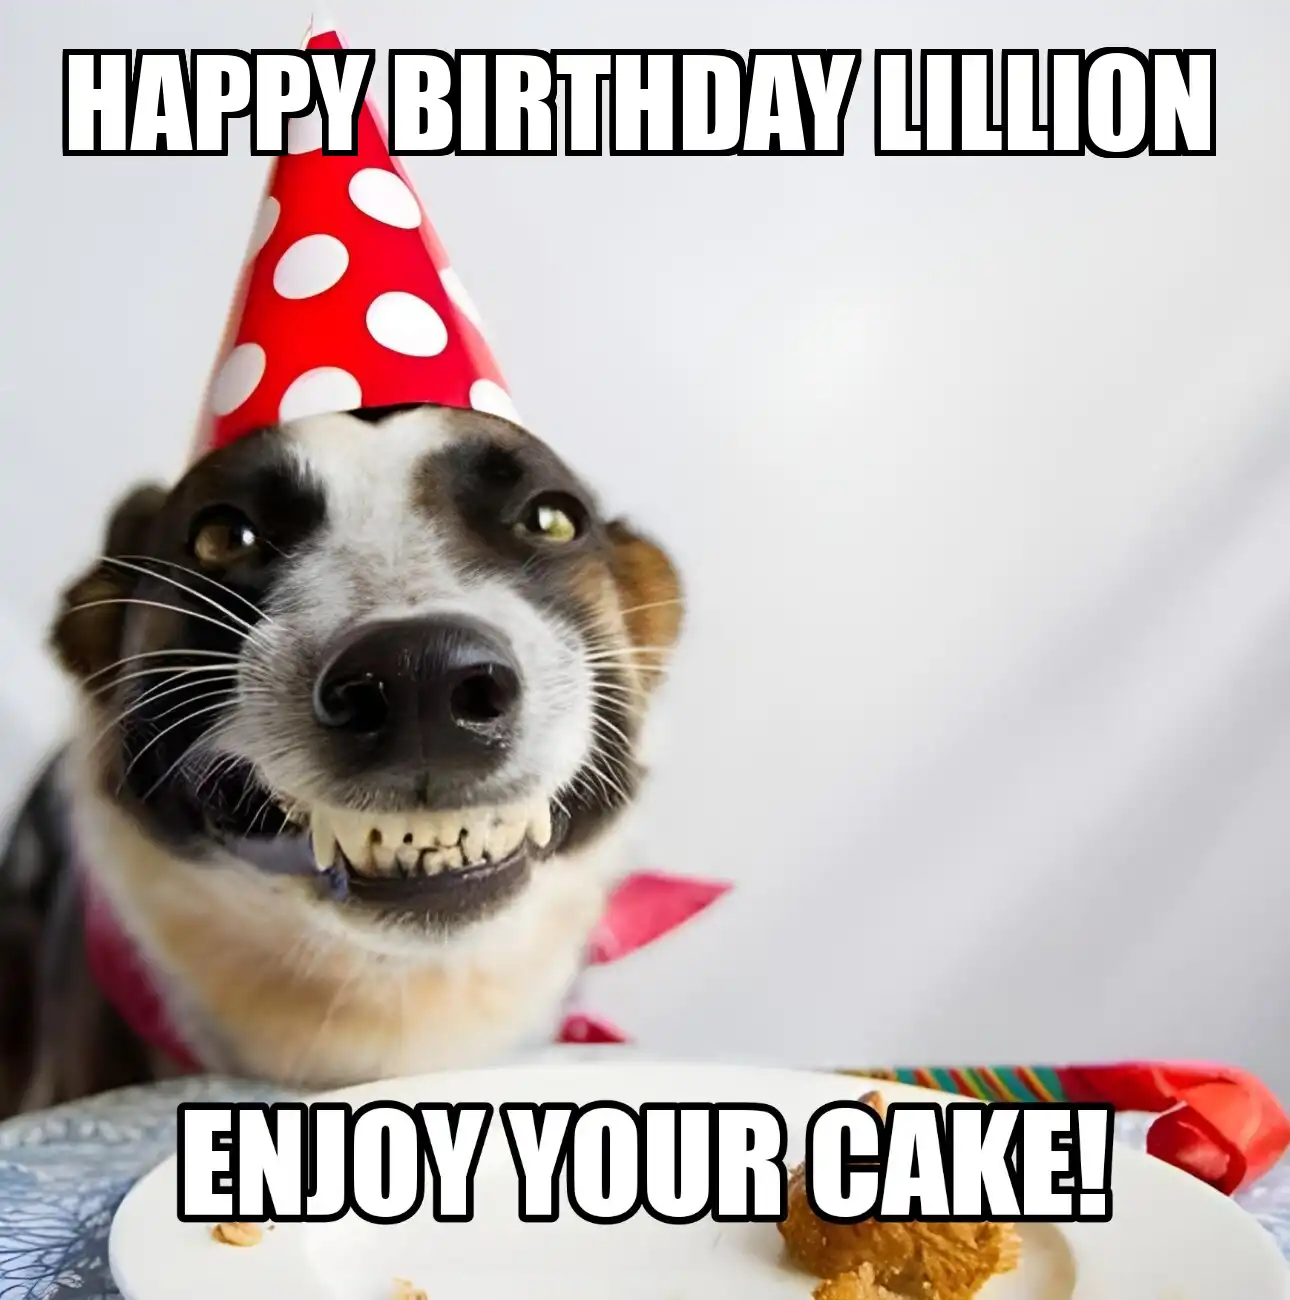 Happy Birthday Lillion Enjoy Your Cake Dog Meme